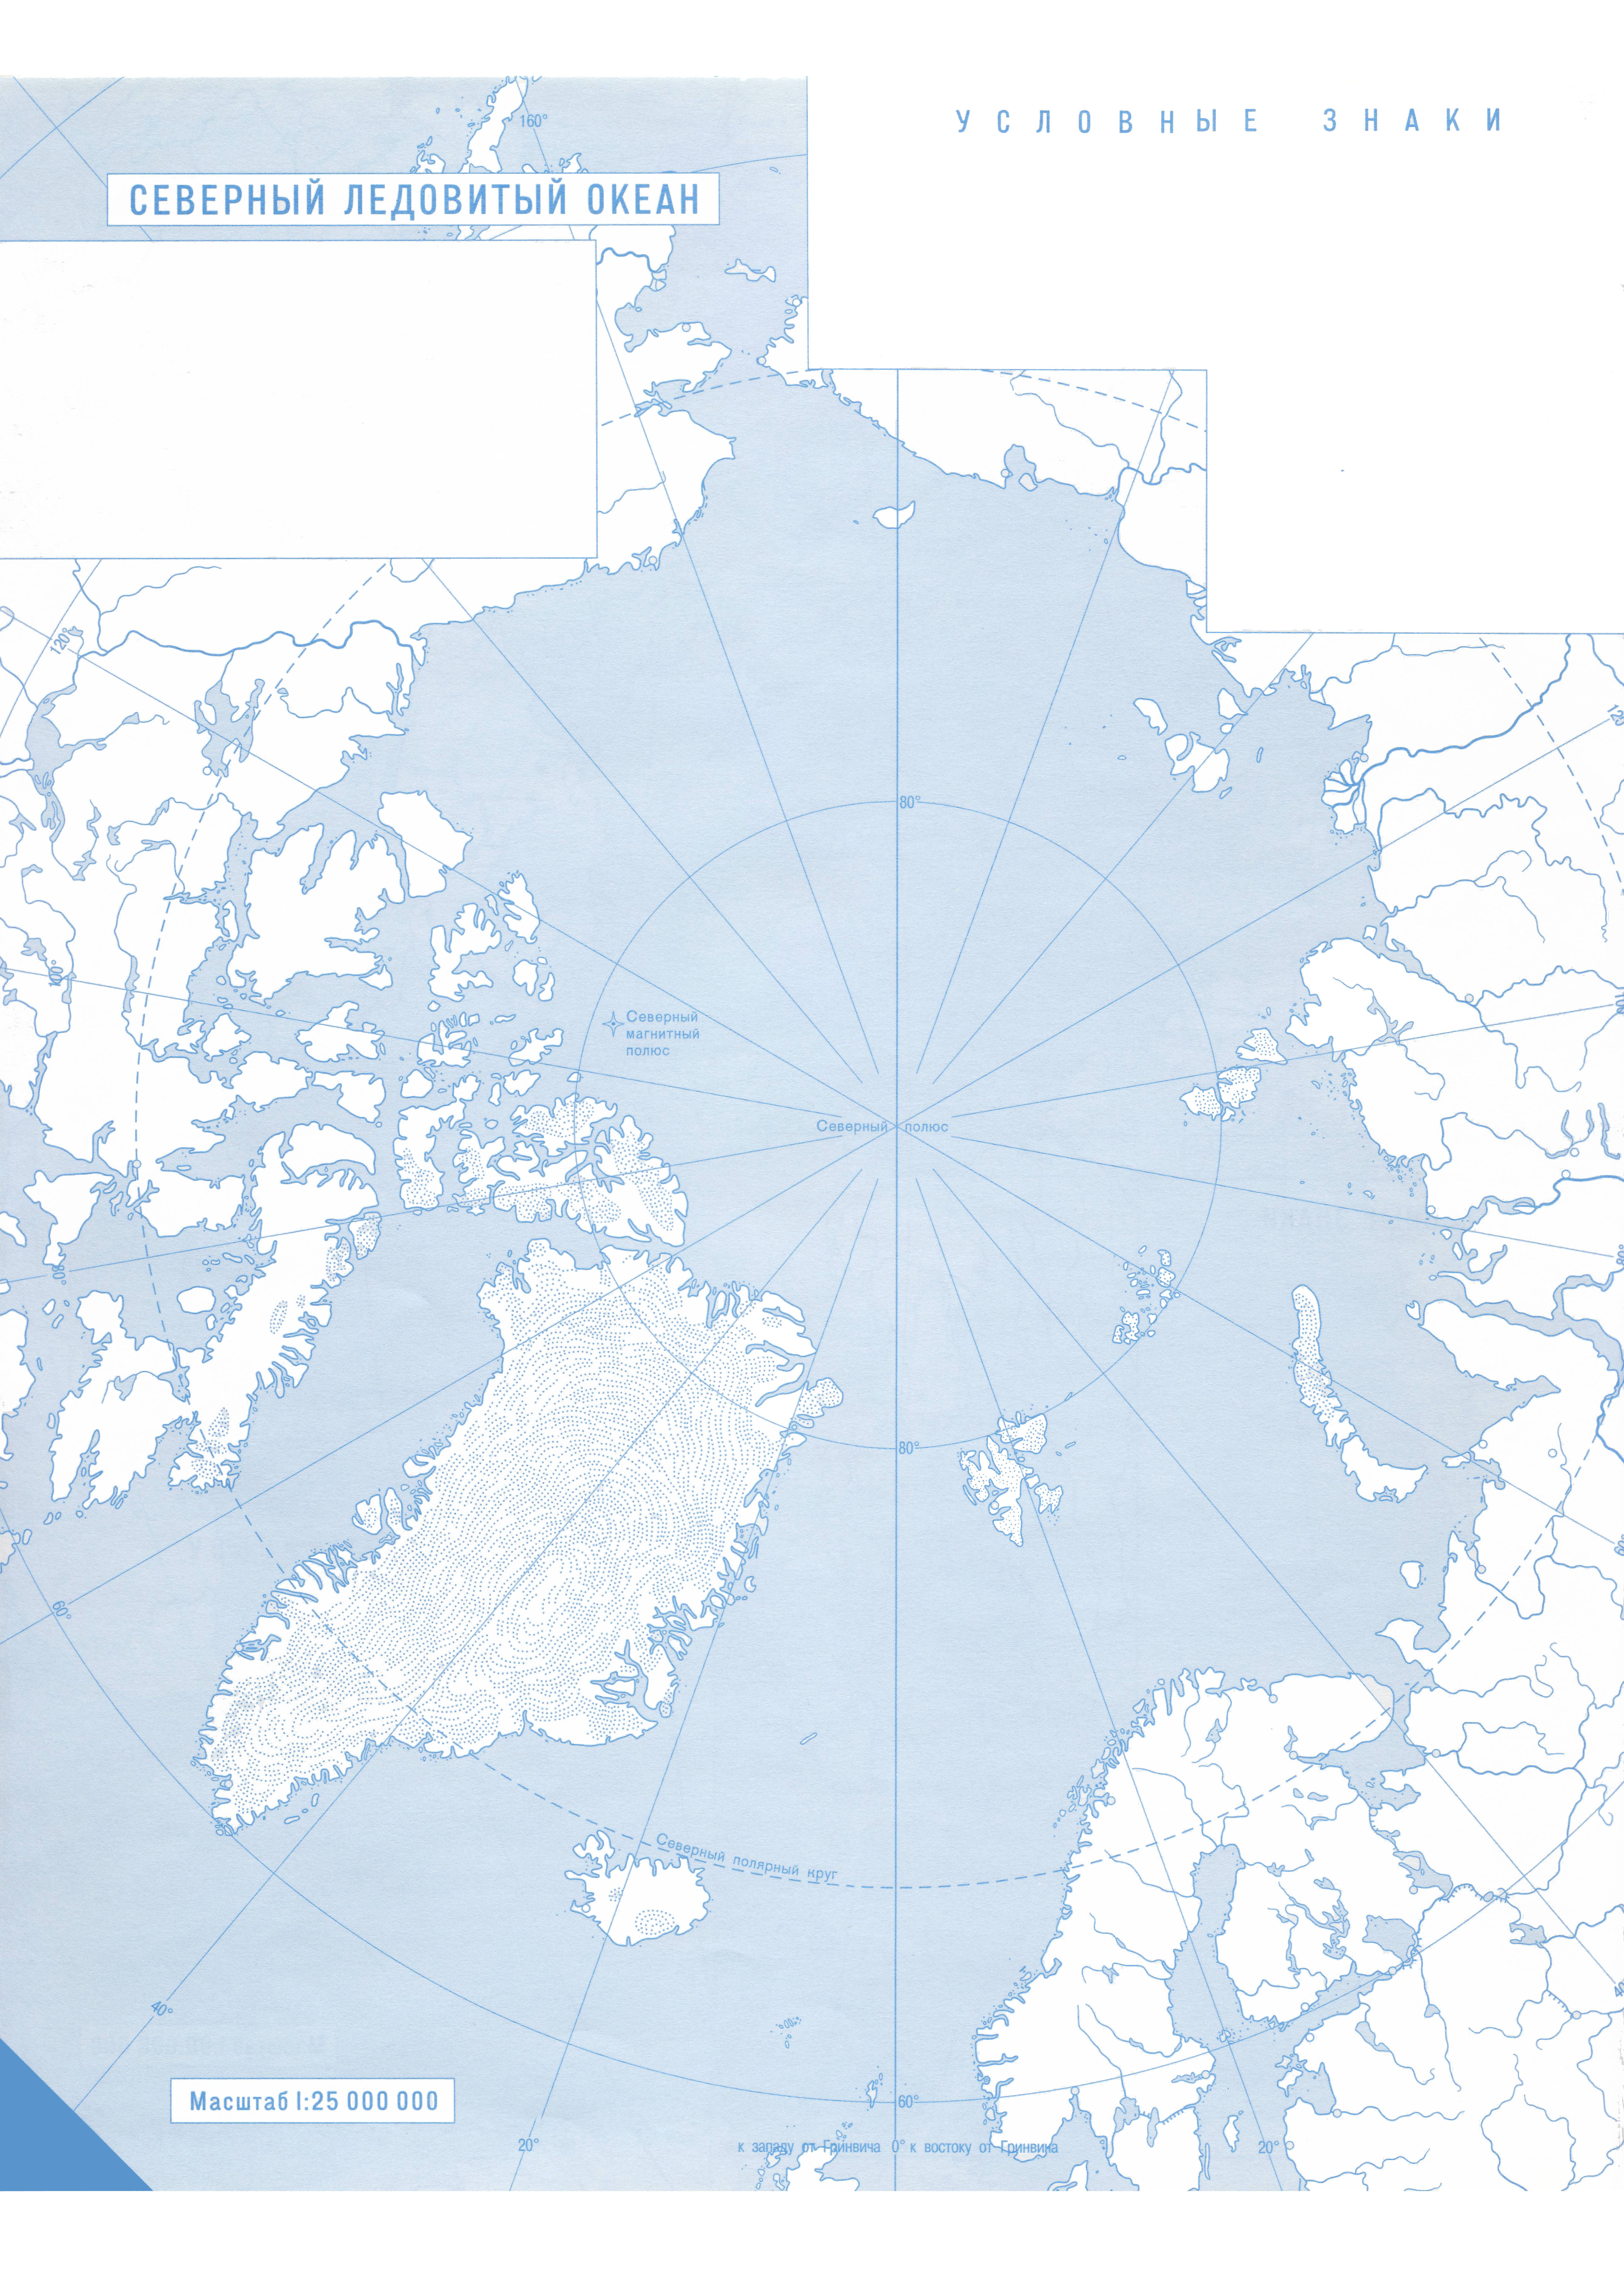 Контурная карта южного океана. Контурная карта Северного Ледовитого океана. Северный Ледовитый океан контурная карта 7. Контурная Каратс севрный ледовиьый о океана. Северный Ледовитый океан контурная карта 7 класс.